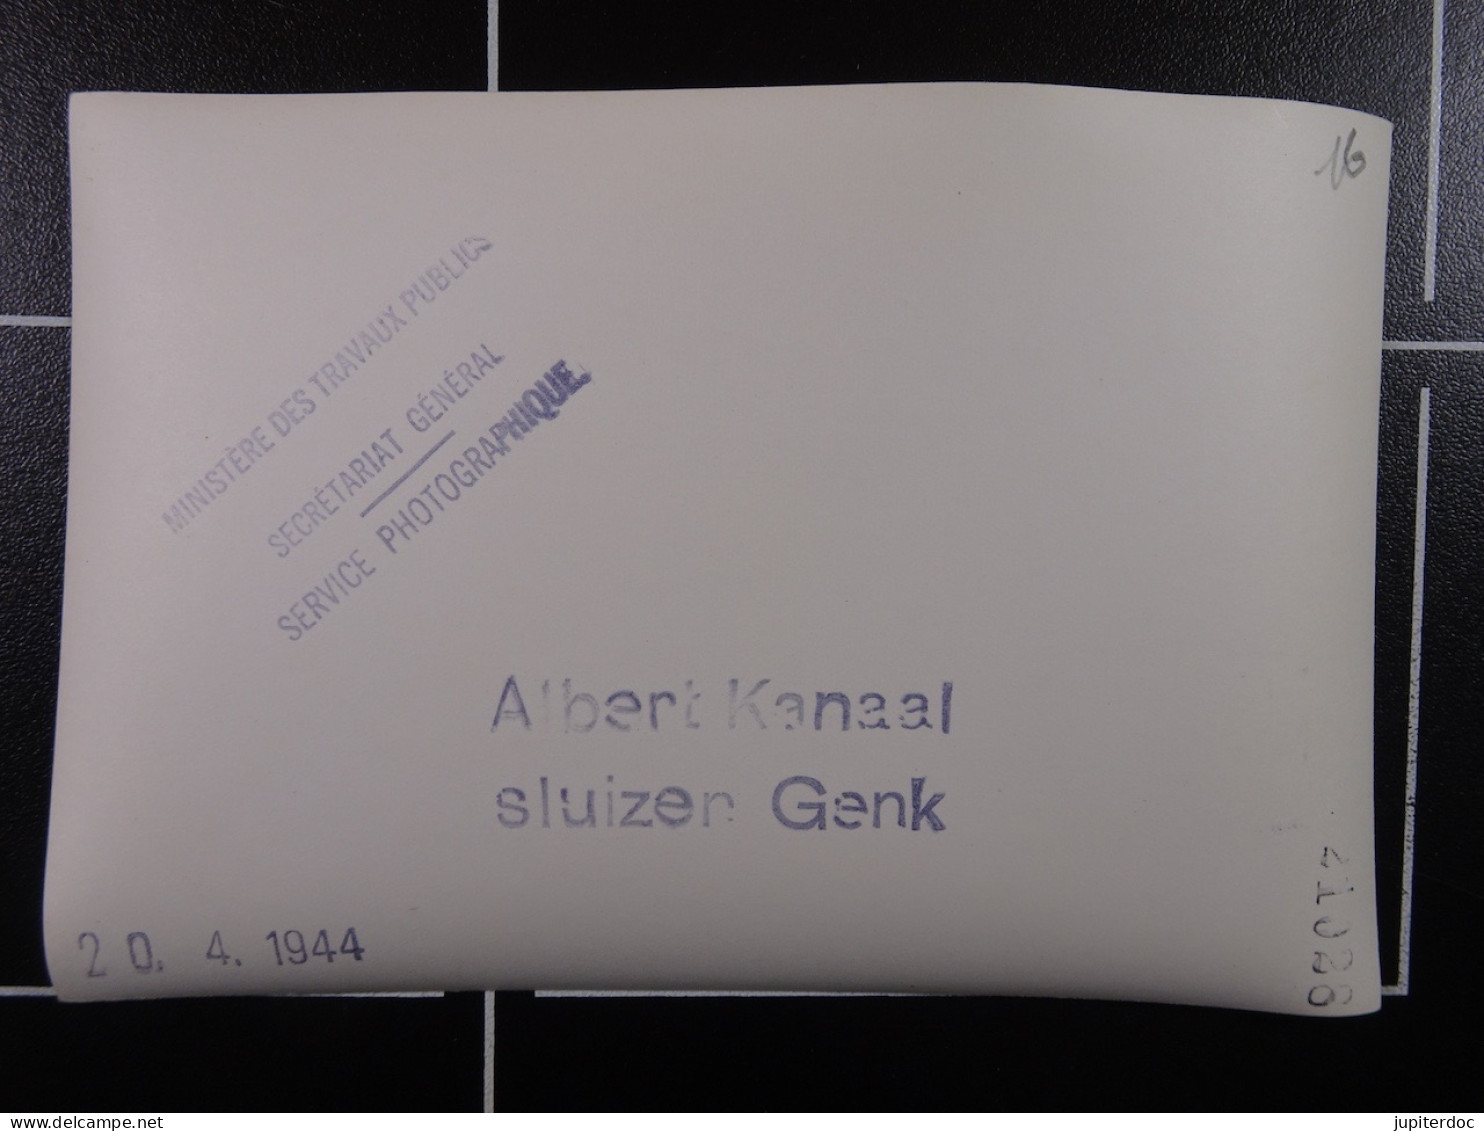 Min.Trav.Pub. Albert Kanaal Sluizen Genk 20-04-1944  /16/ - Diploma's En Schoolrapporten